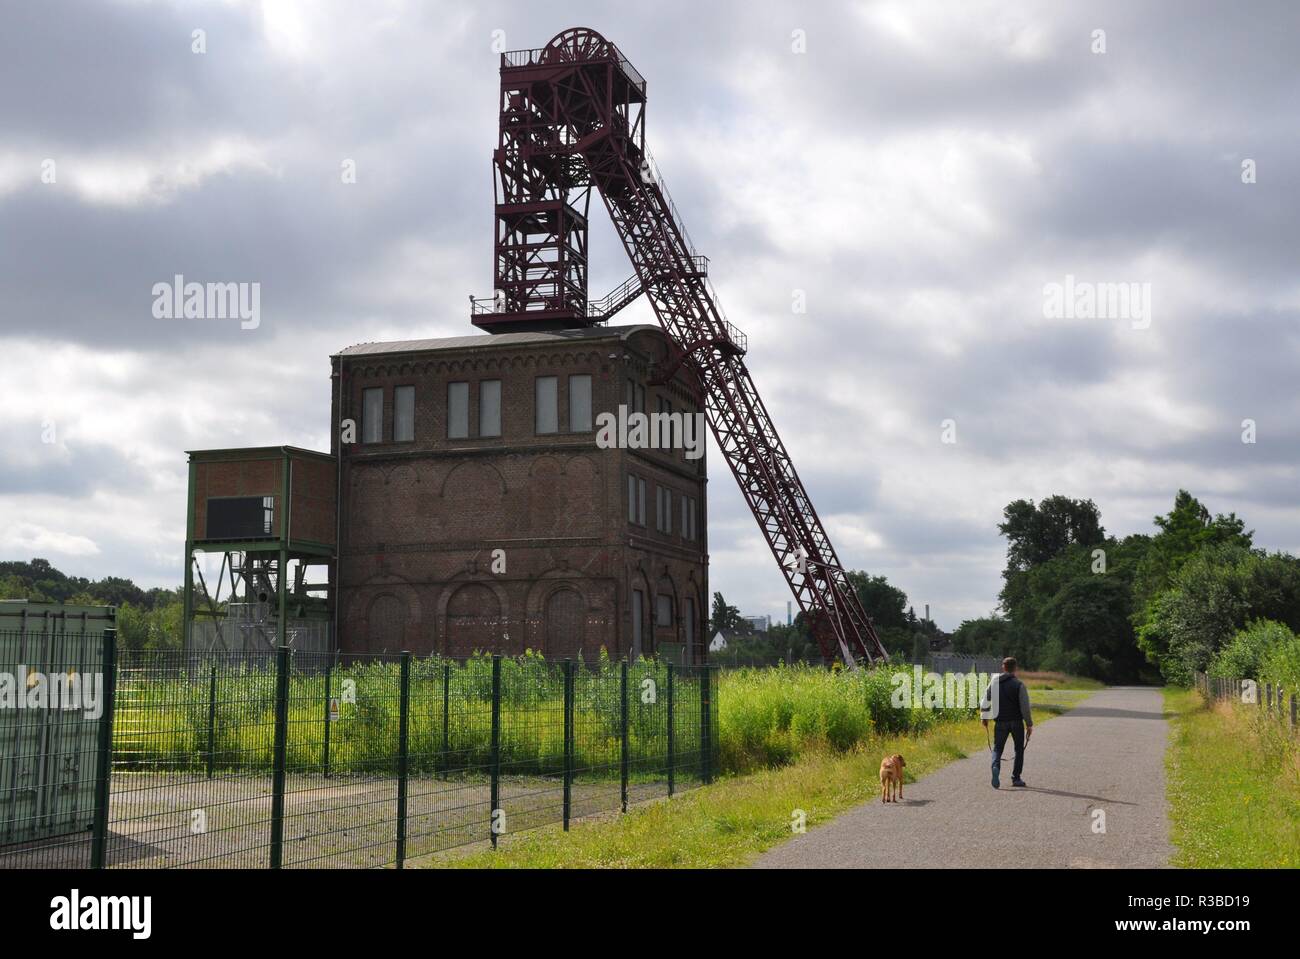 Die alte Zeche terkrade' mit Anlage für Methan Gas am 03.07.2016 in Oberhausen - Deutschland. | Verwendung weltweit Stockfoto